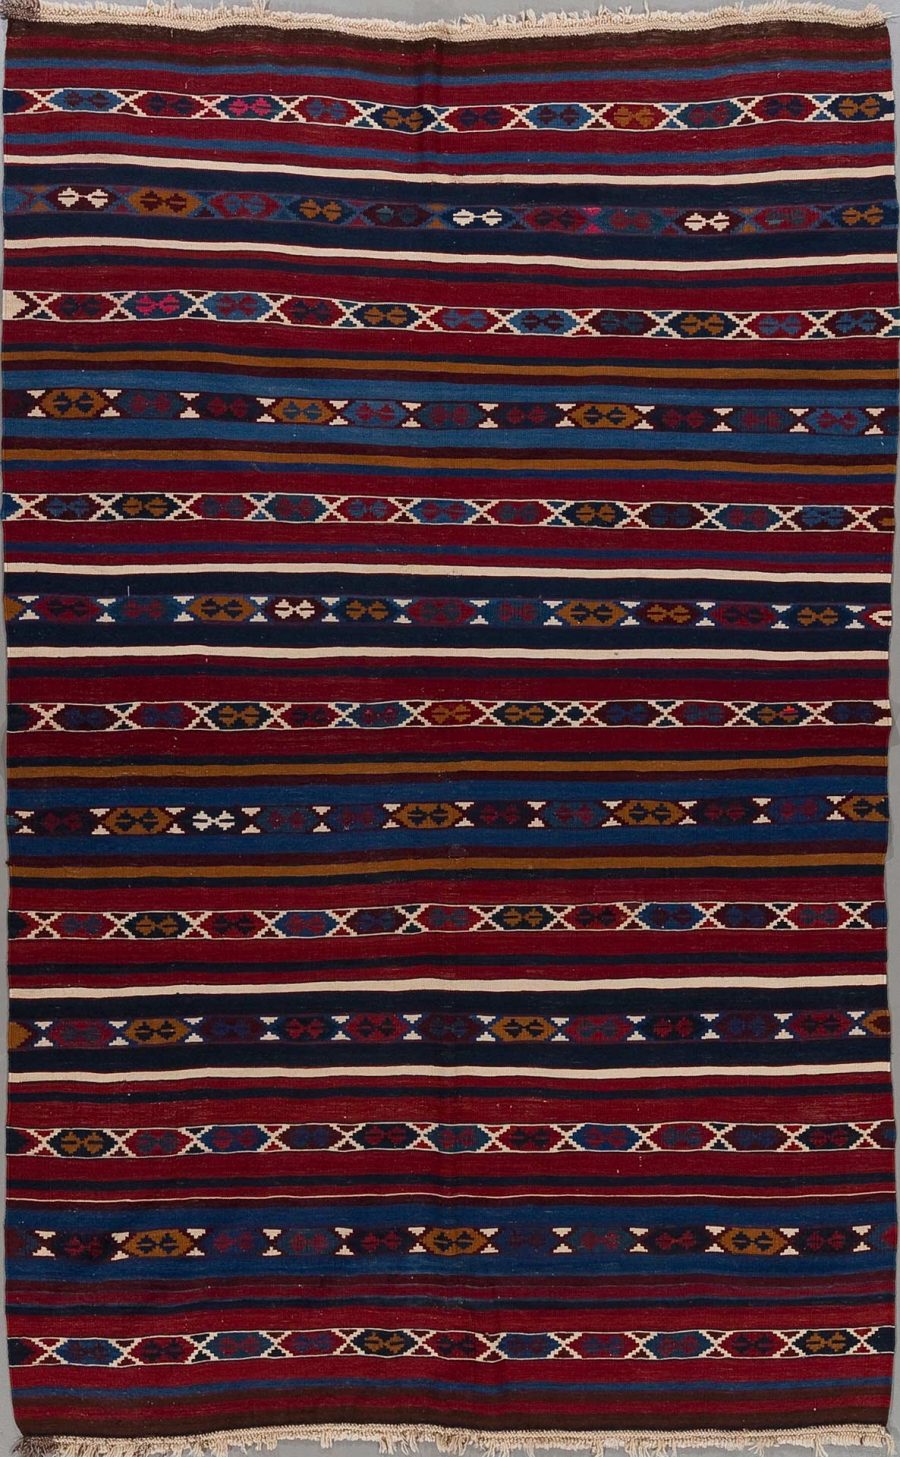 Handgewebter Teppich mit traditionellen Mustern in Farbtönen von Blau, Rot, Weiß und Gelb auf vertikalen Streifen.